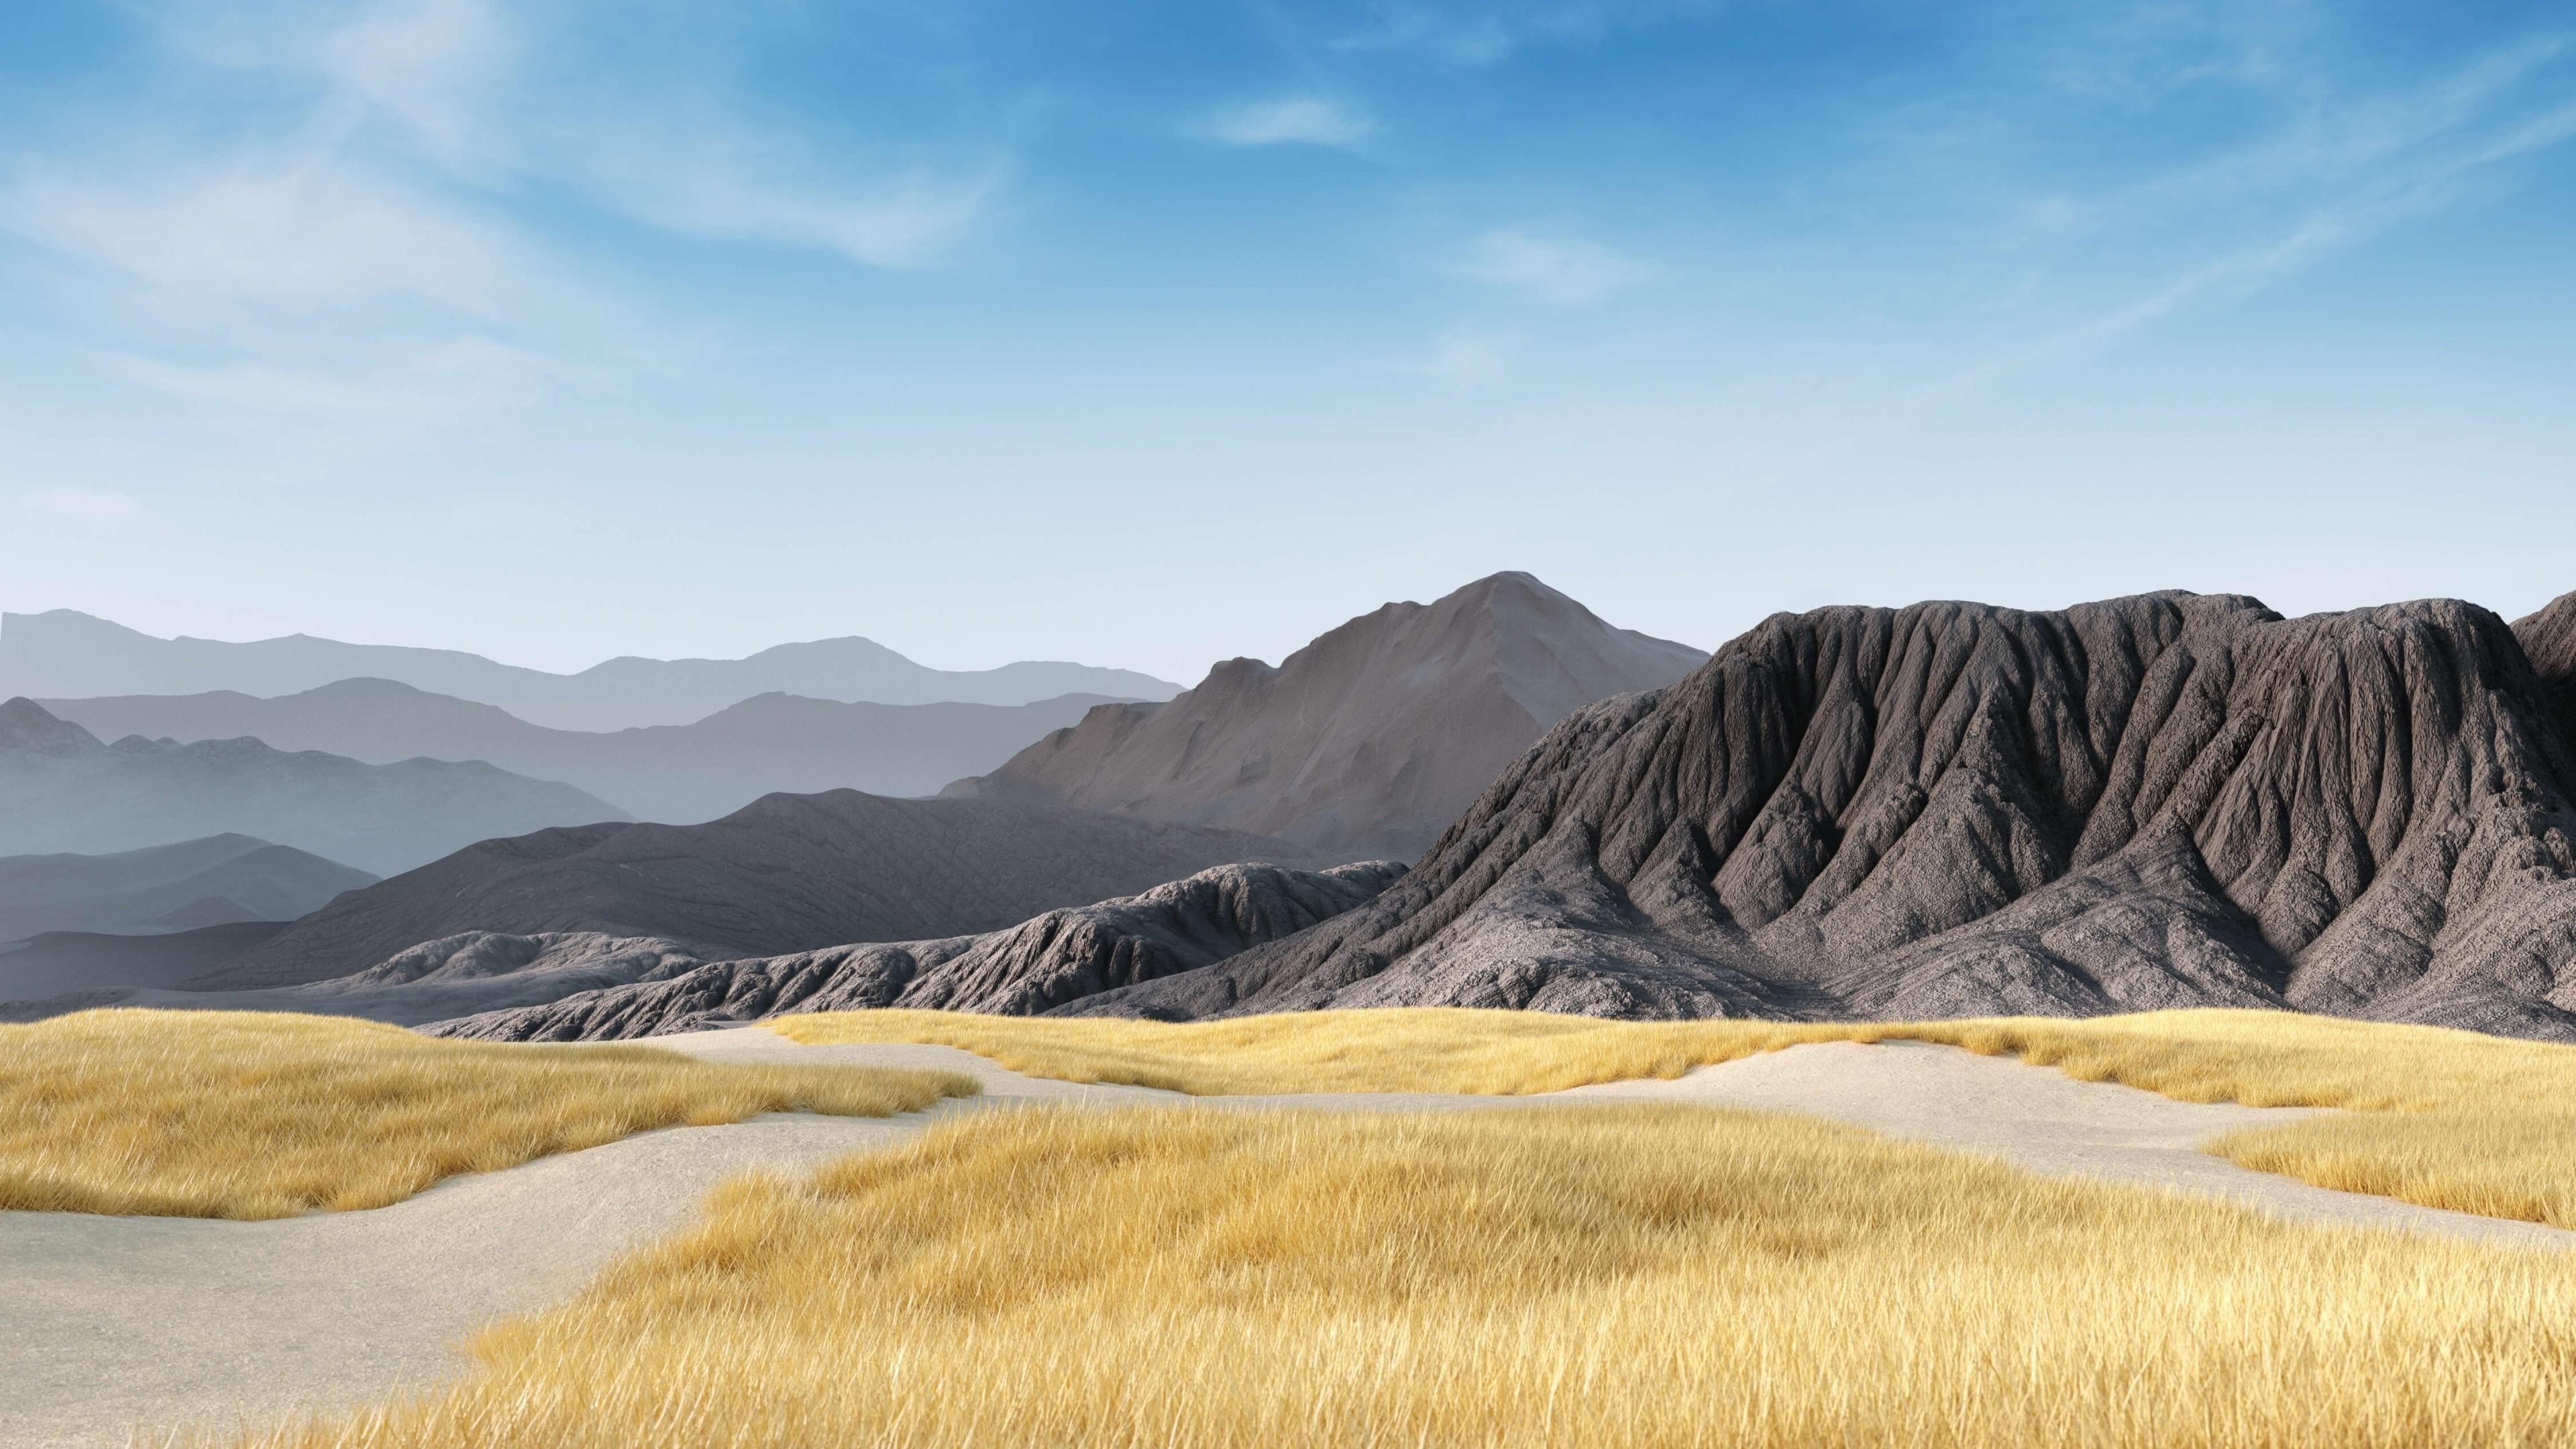 HD wallpaper, Mountain, Hd, Landscape, 4K, Scenery, Wallpaper